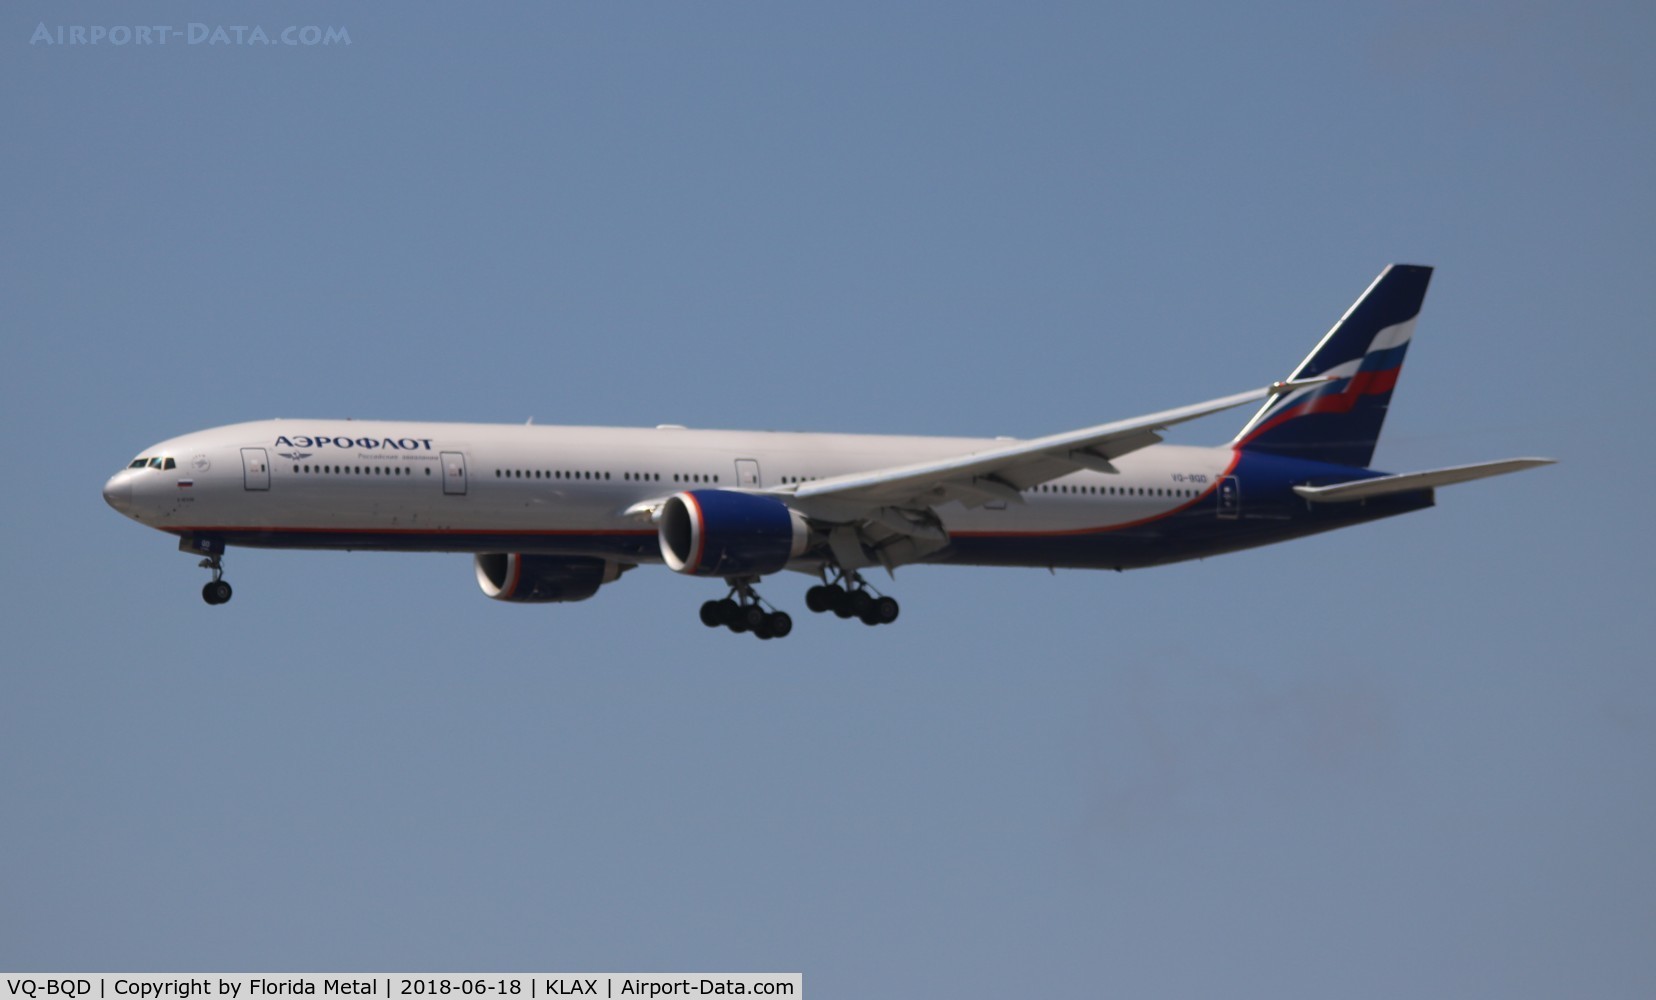 VQ-BQD, 2014 Boeing 777-3M0/ER C/N 41682, Aeroflot 777-300